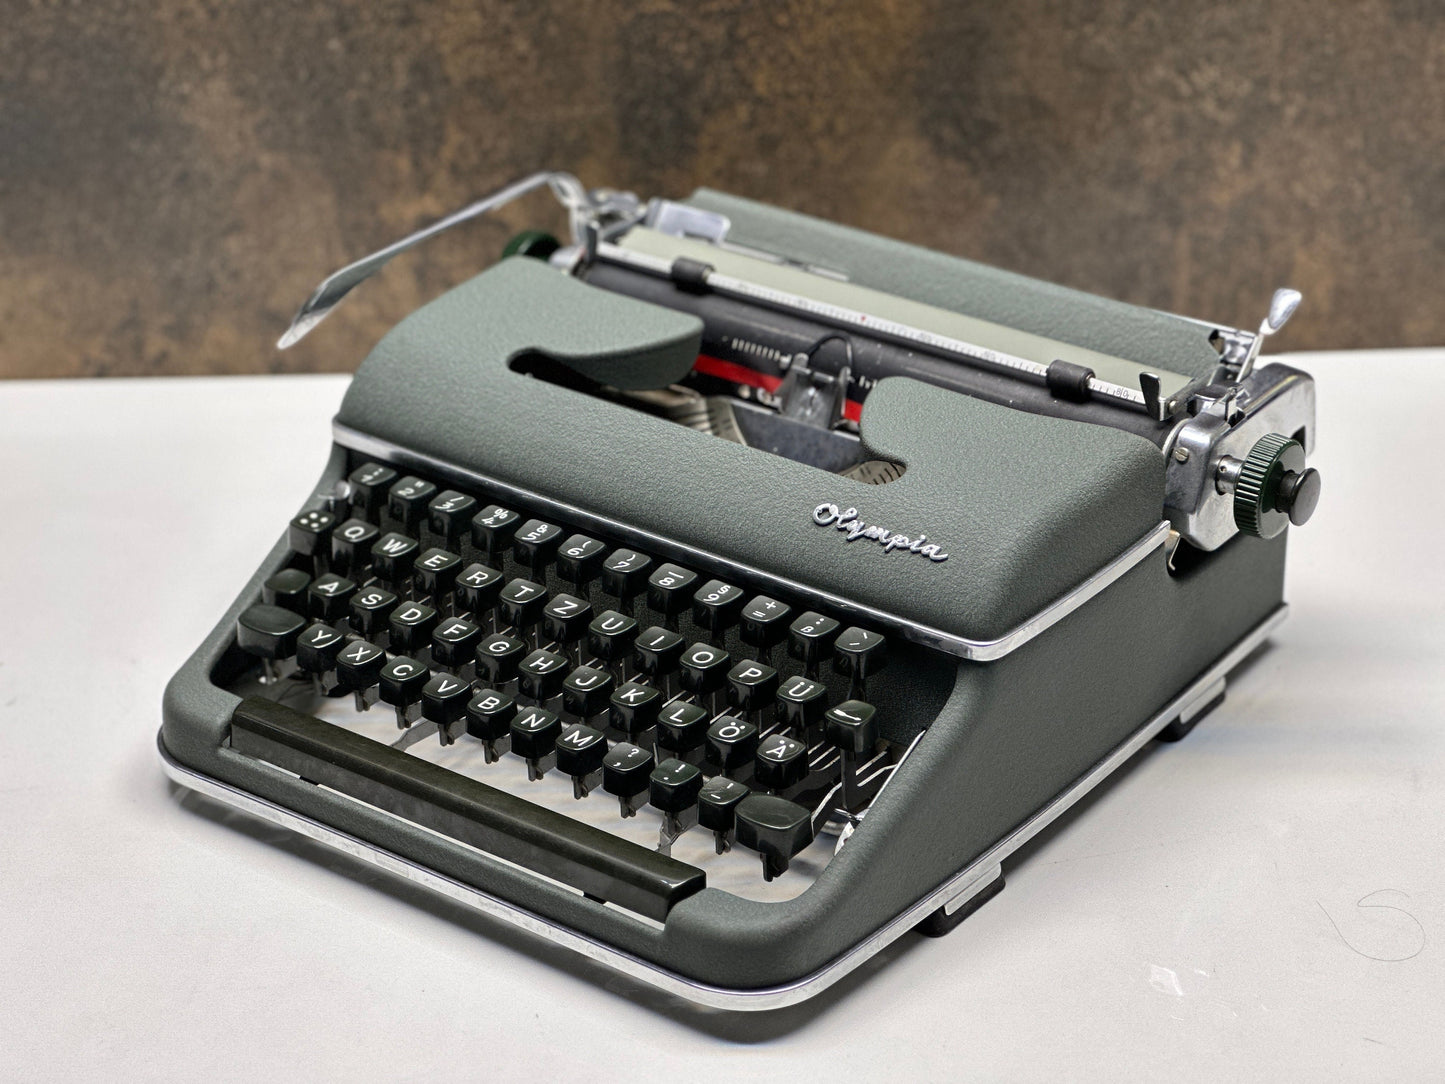 Olympia SM3 Typewriter - Special Typewriter Full Orginal - Premium Gift / Typewriter World | Typewriter like new| Typewriter Working Service